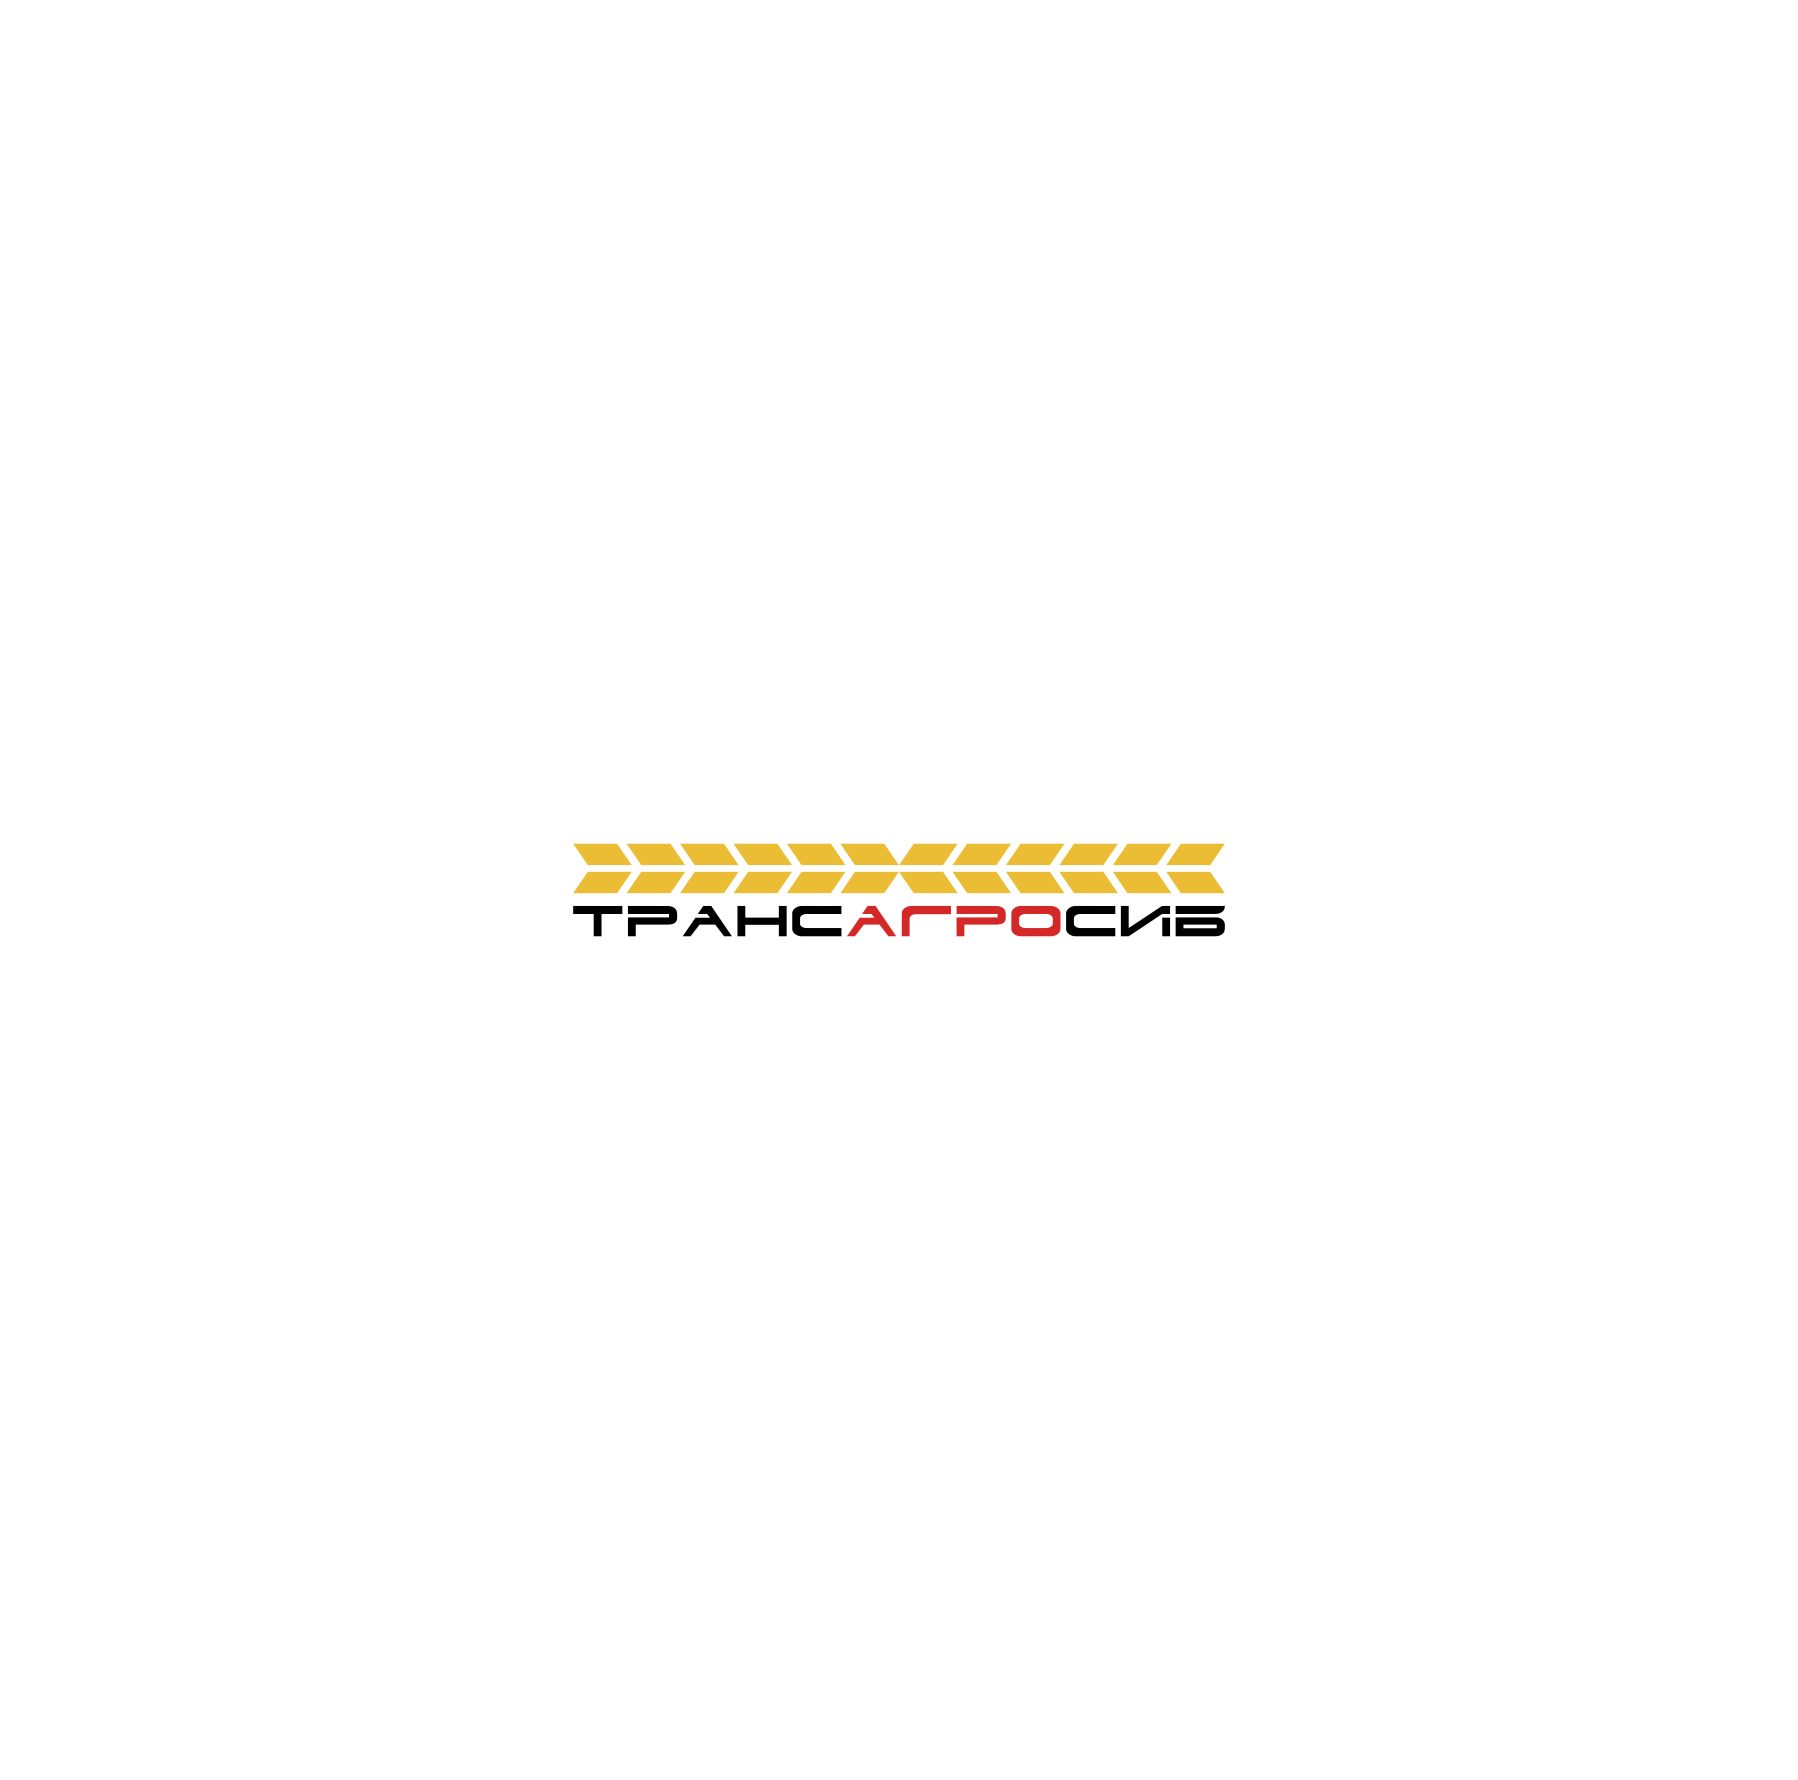 Создание логотипа транспортной компании - дизайнер IGOR-GOR